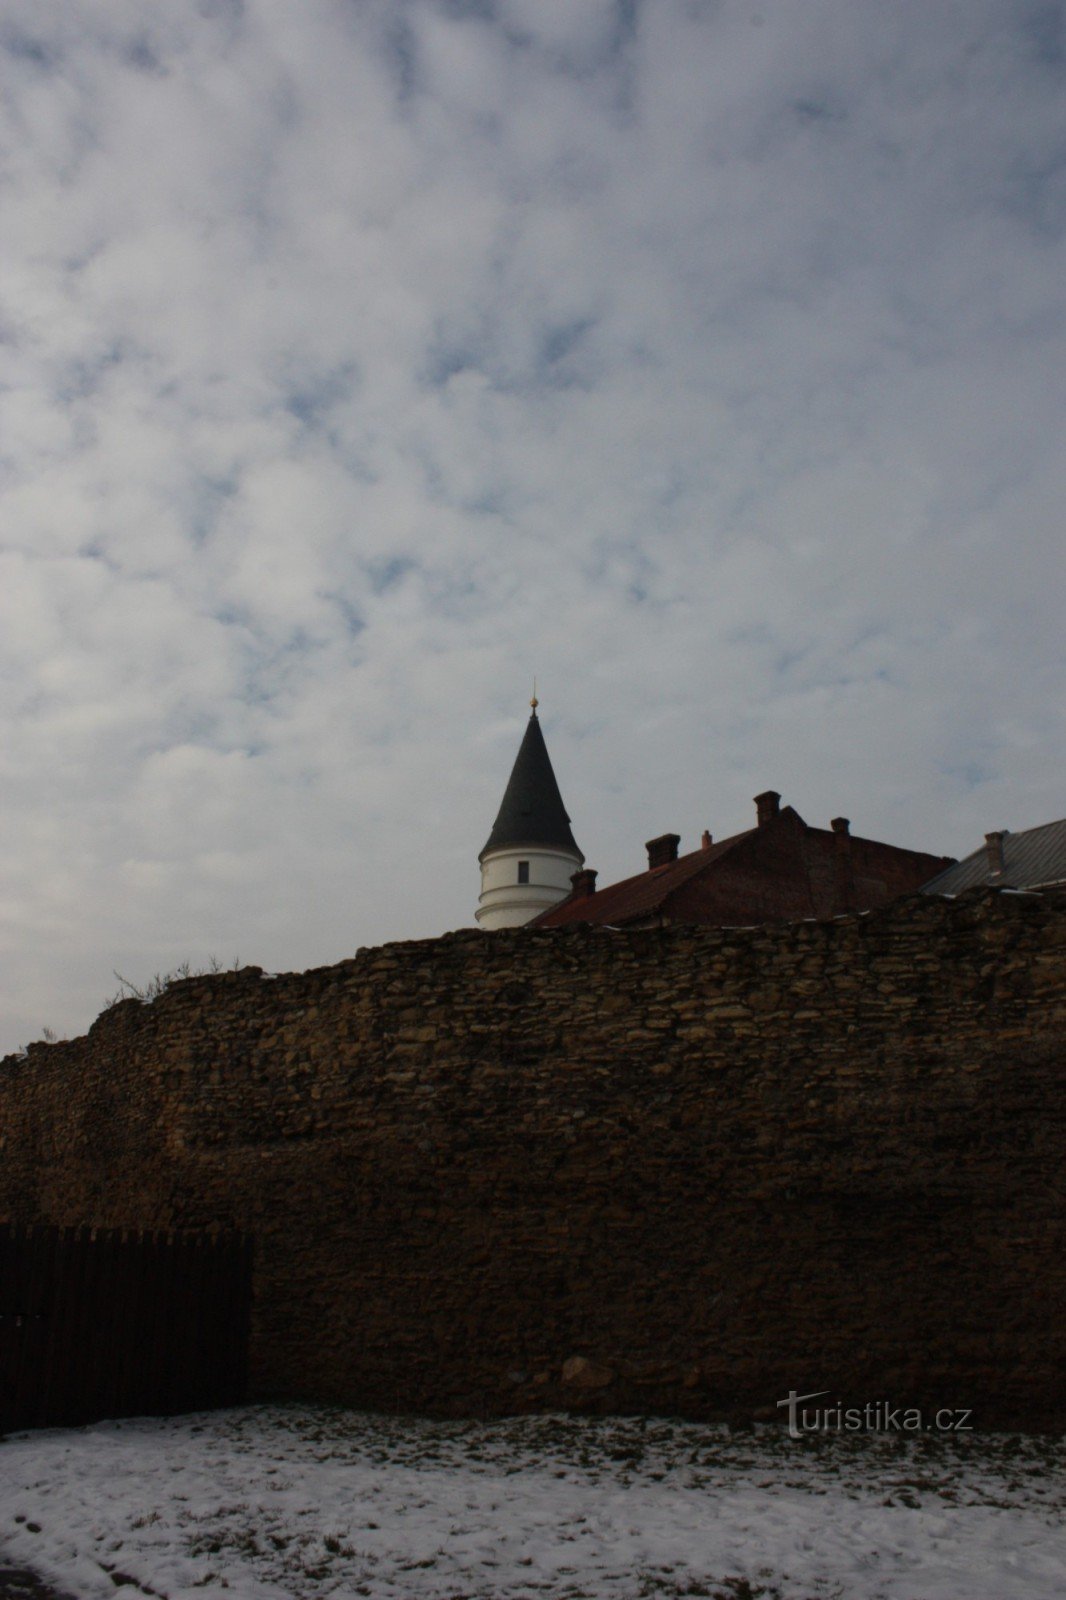 Υπολείμματα του οχυρωματικού συστήματος του 15ου αιώνα στο Přerov